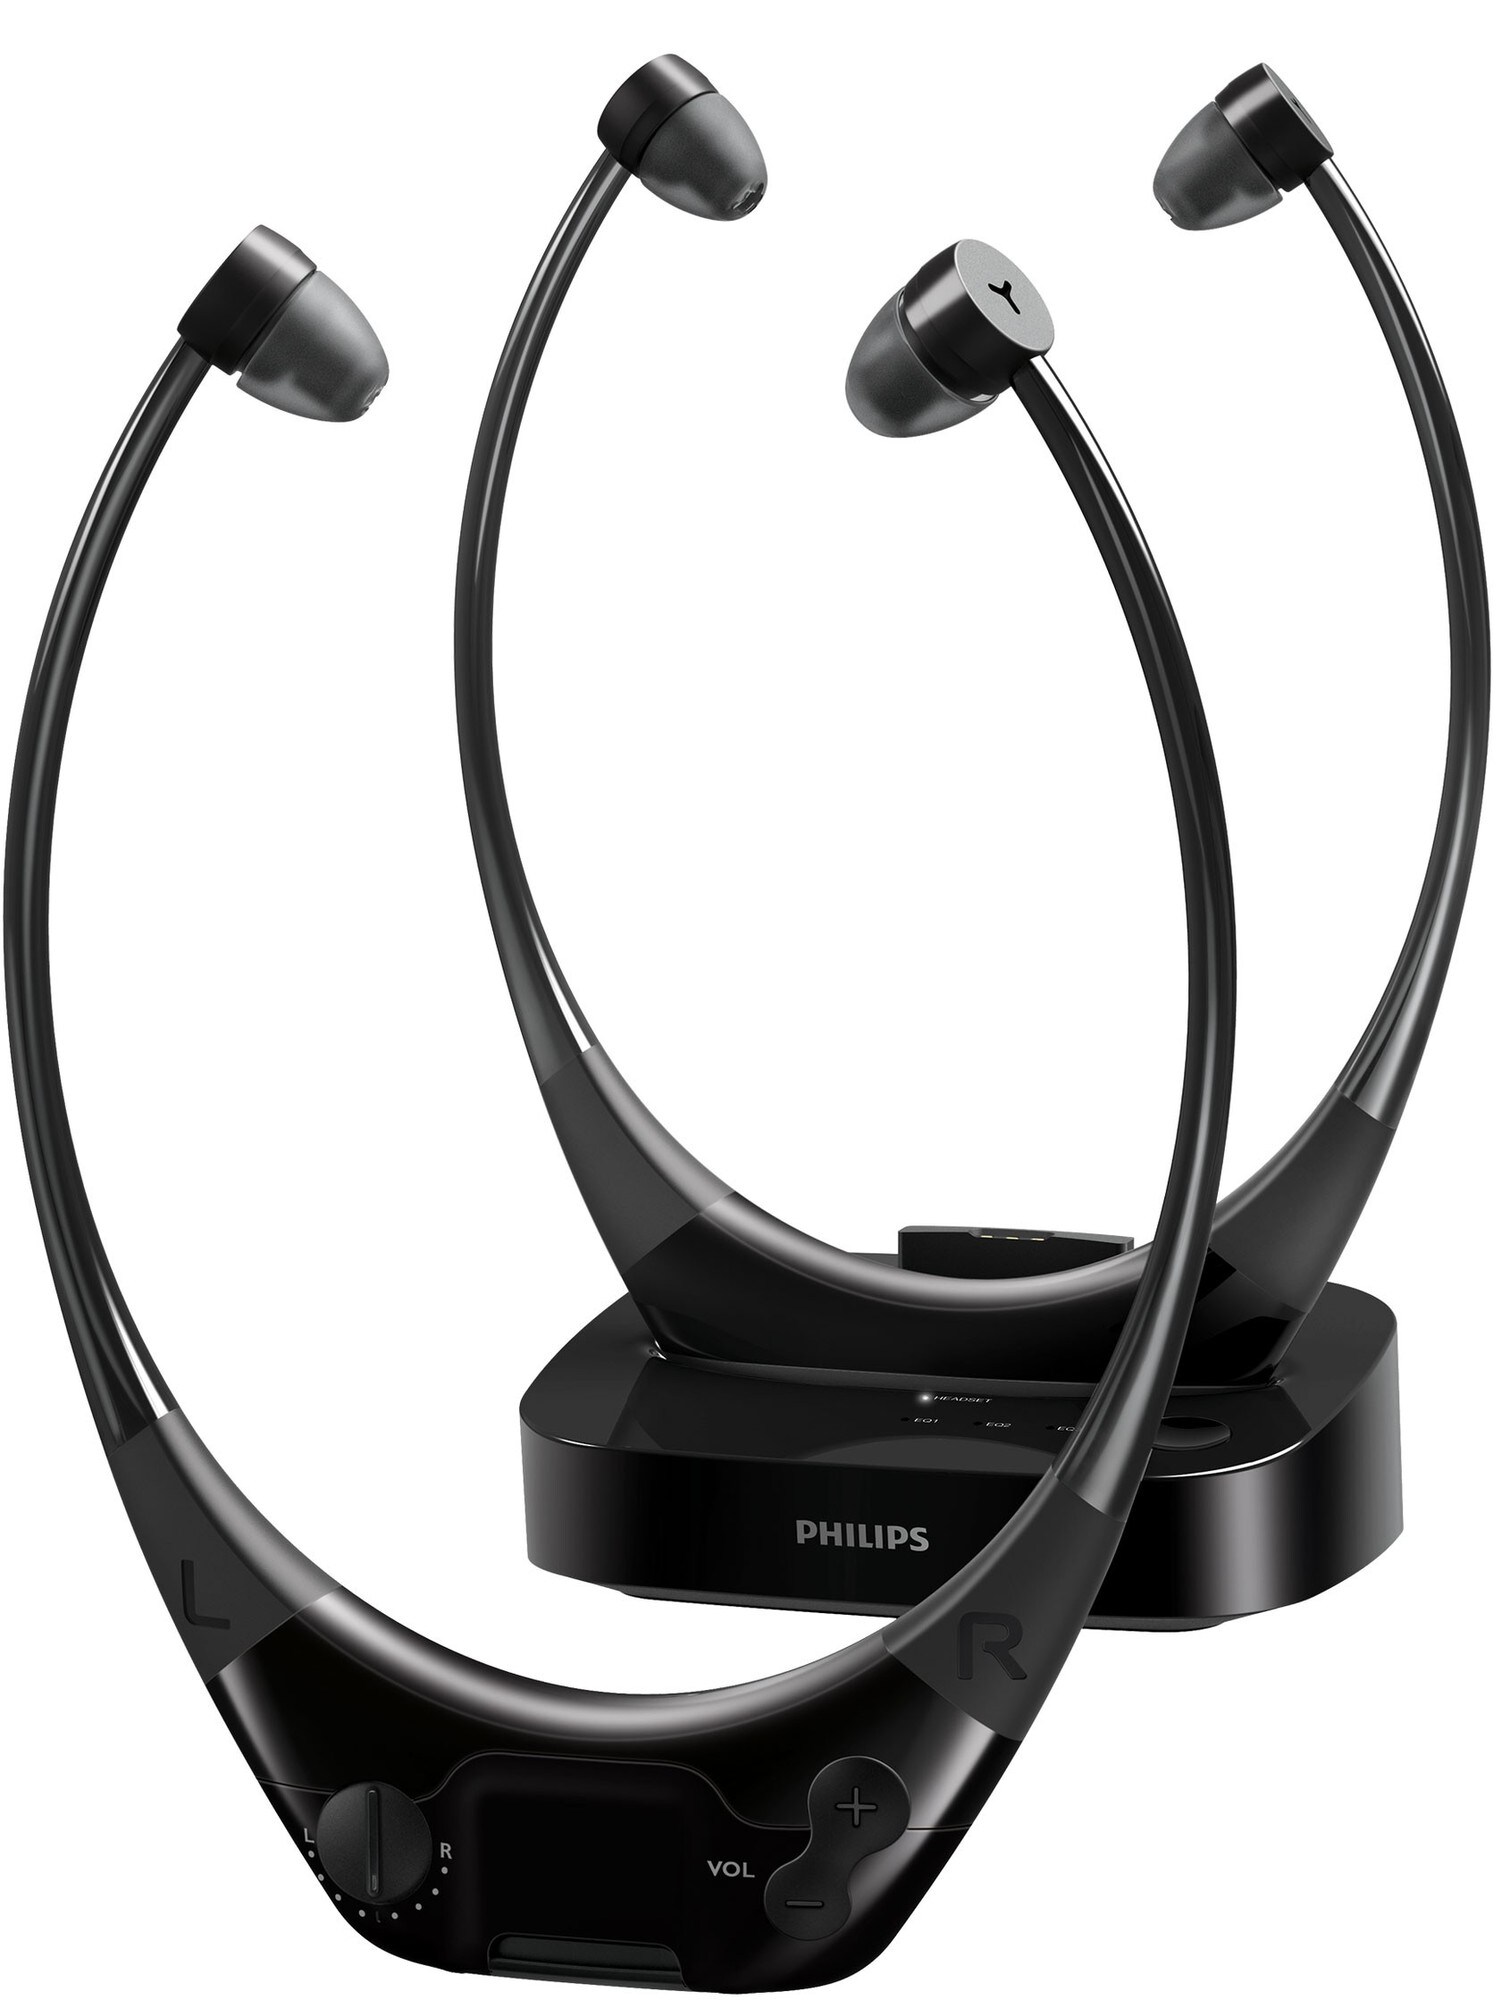 Philips AudioBoost TV trådl in-ear hodetelefoner 2 stk - Elkjøp